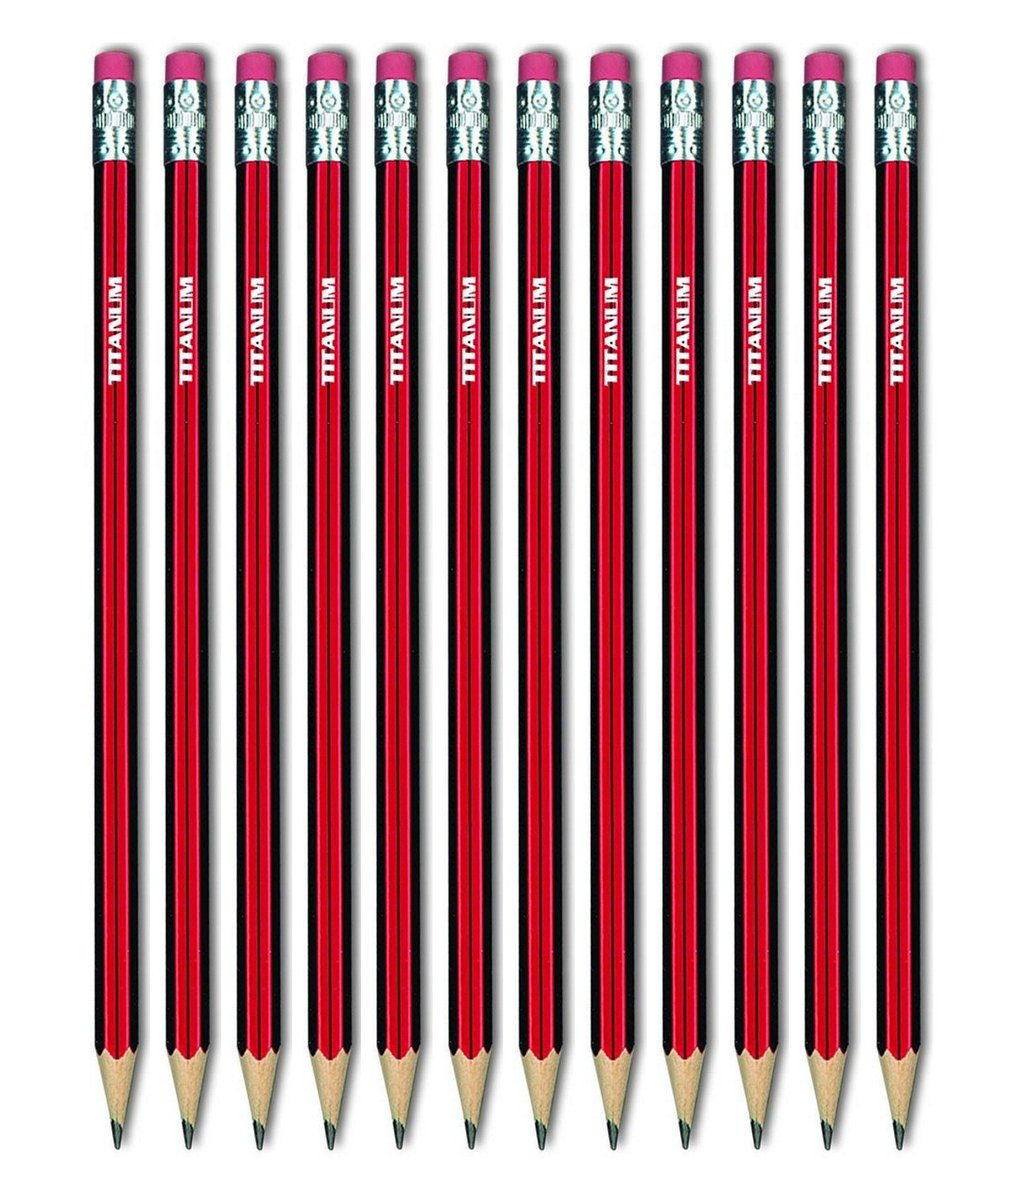 Titanum Ołówki techniczne z gumką 4B opakowanie 12 szt